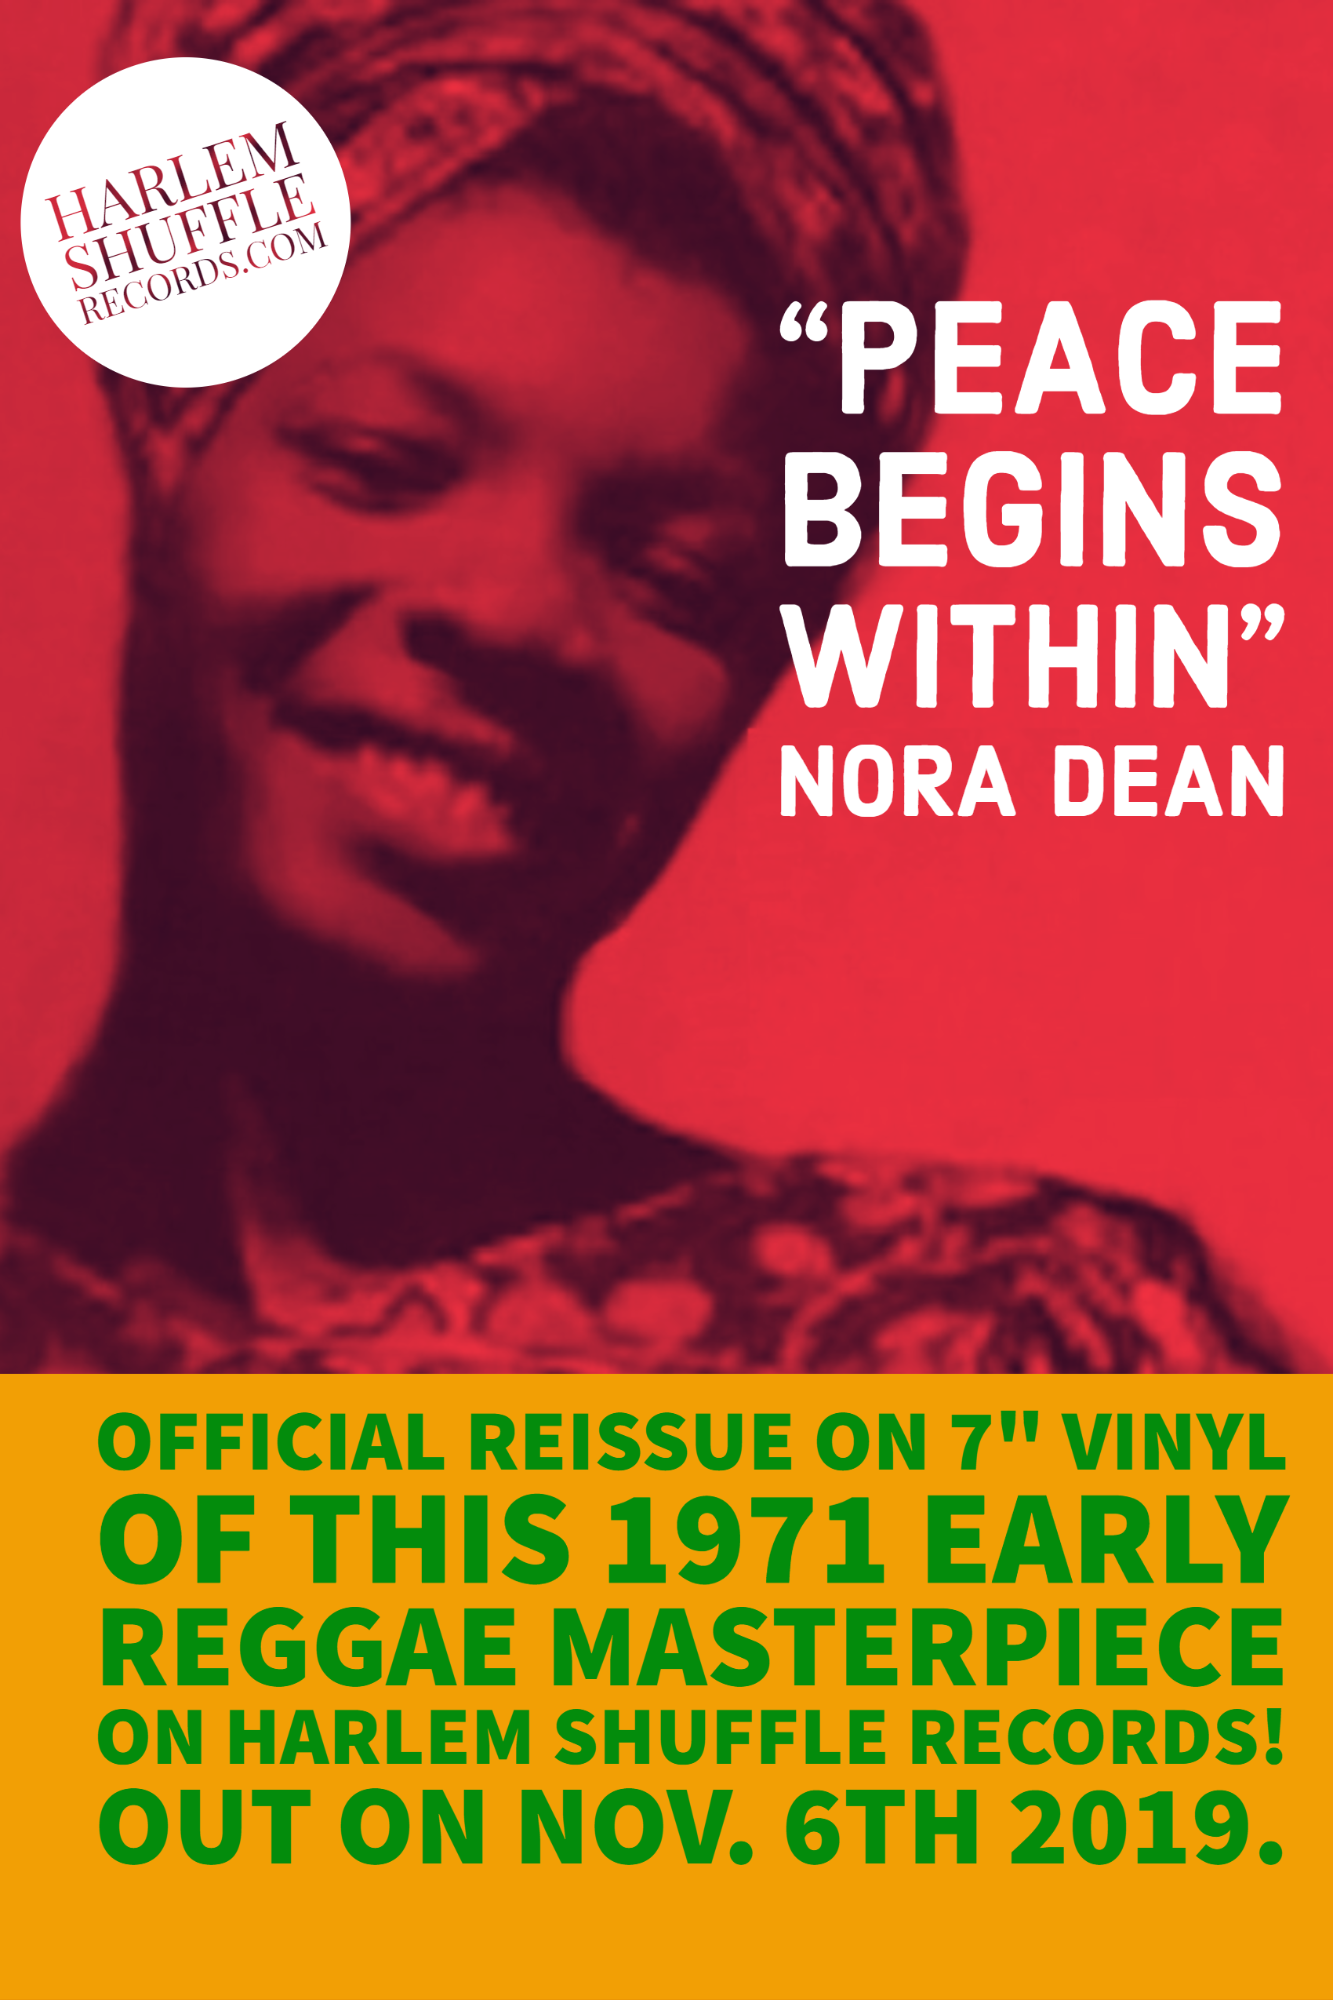 Nora Dean 6 th Nov 19 - no res